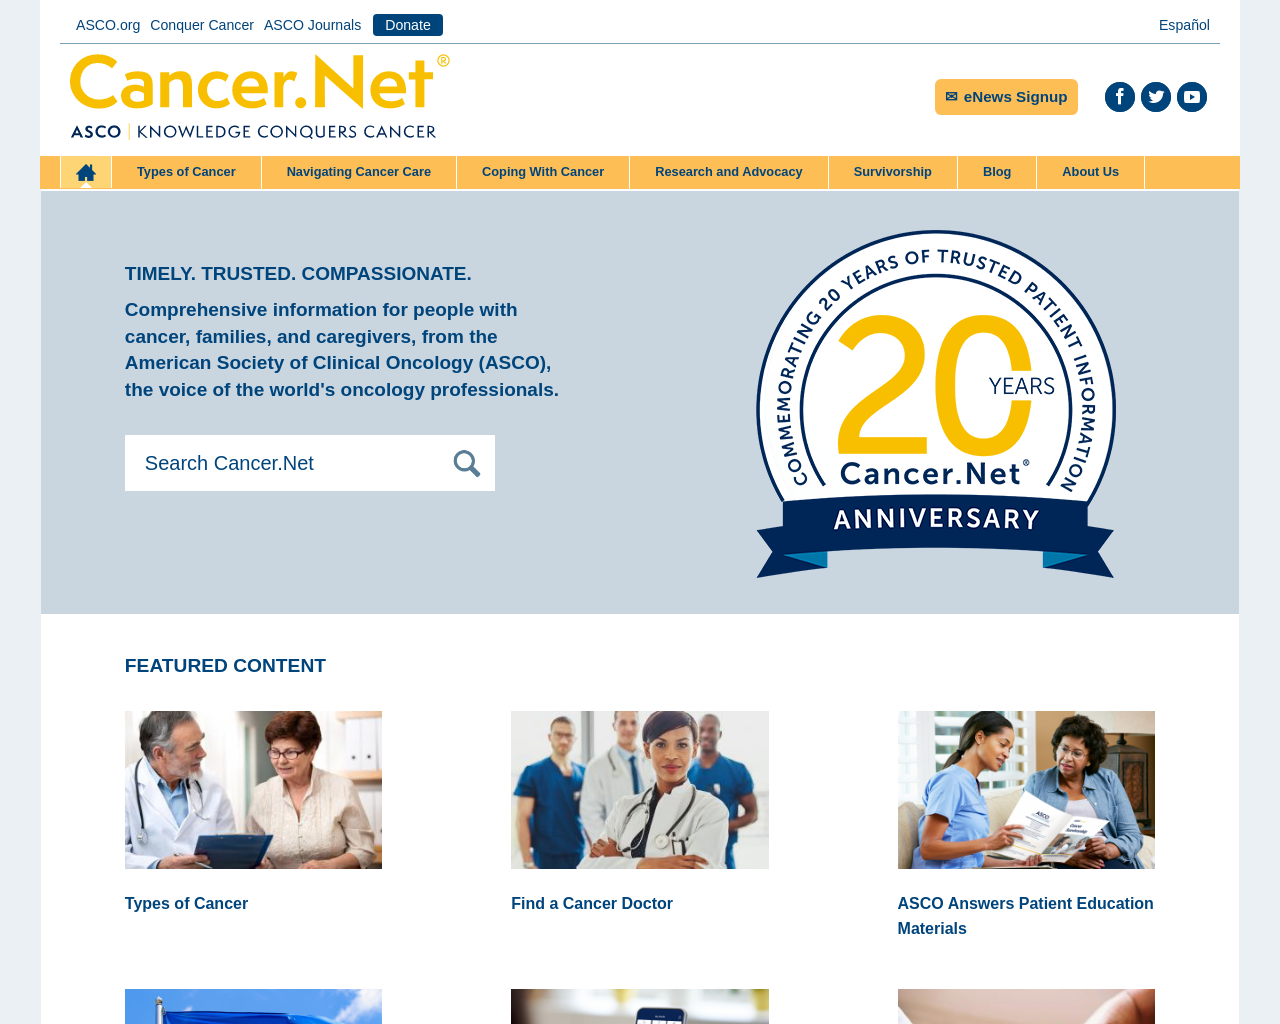 www.cancer.net